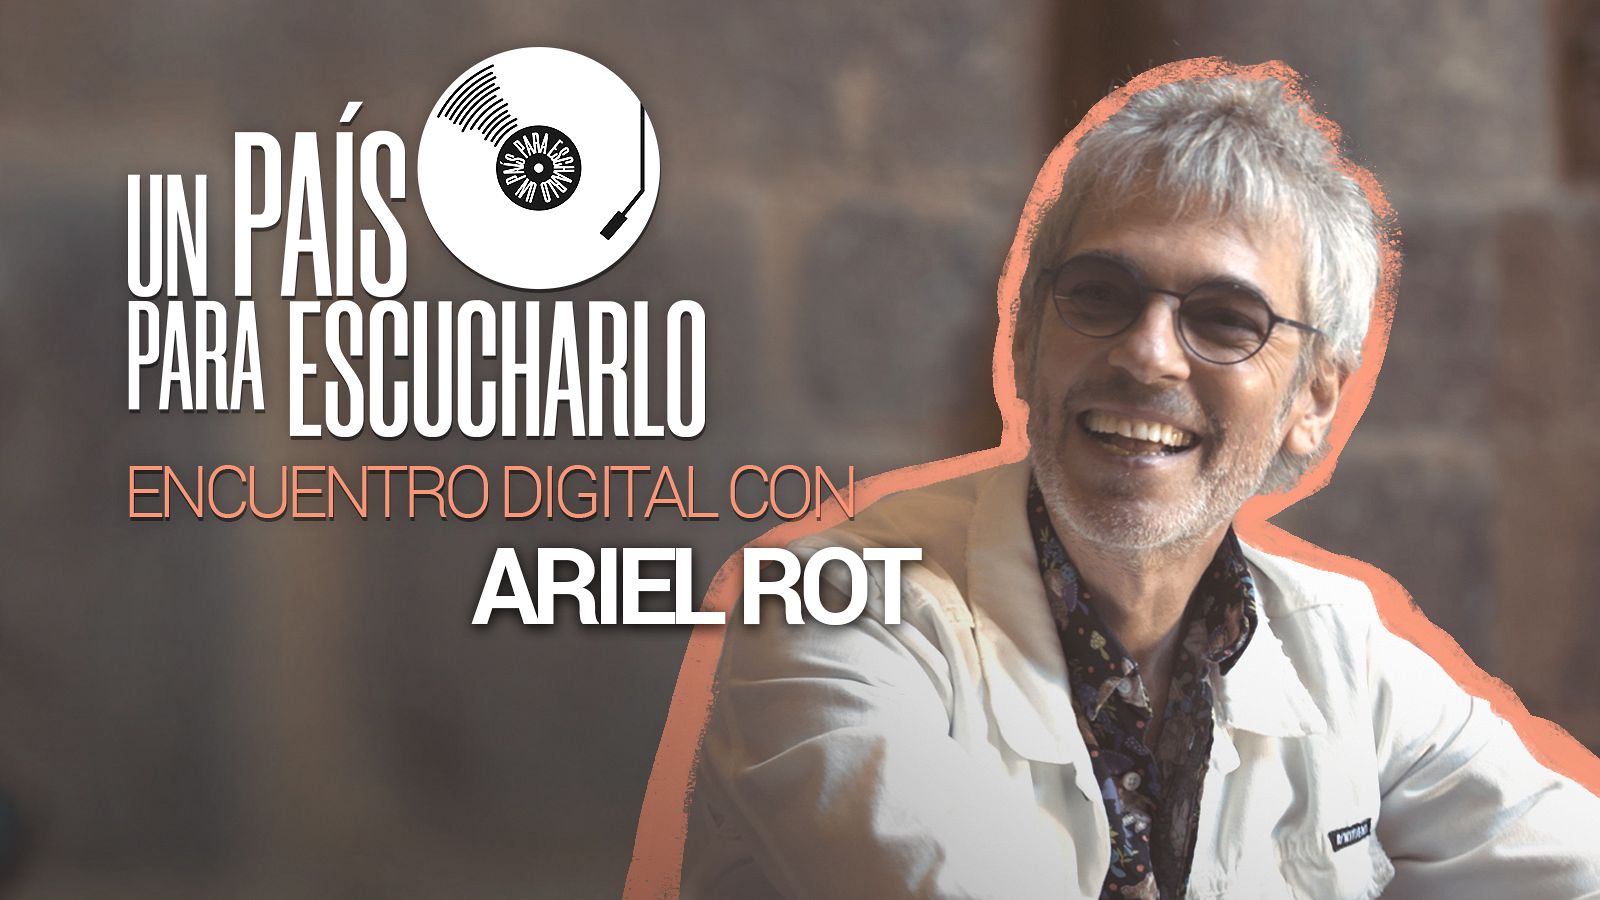 La emotiva despedida de Ariel Rot en 'Un país para escucharlo'